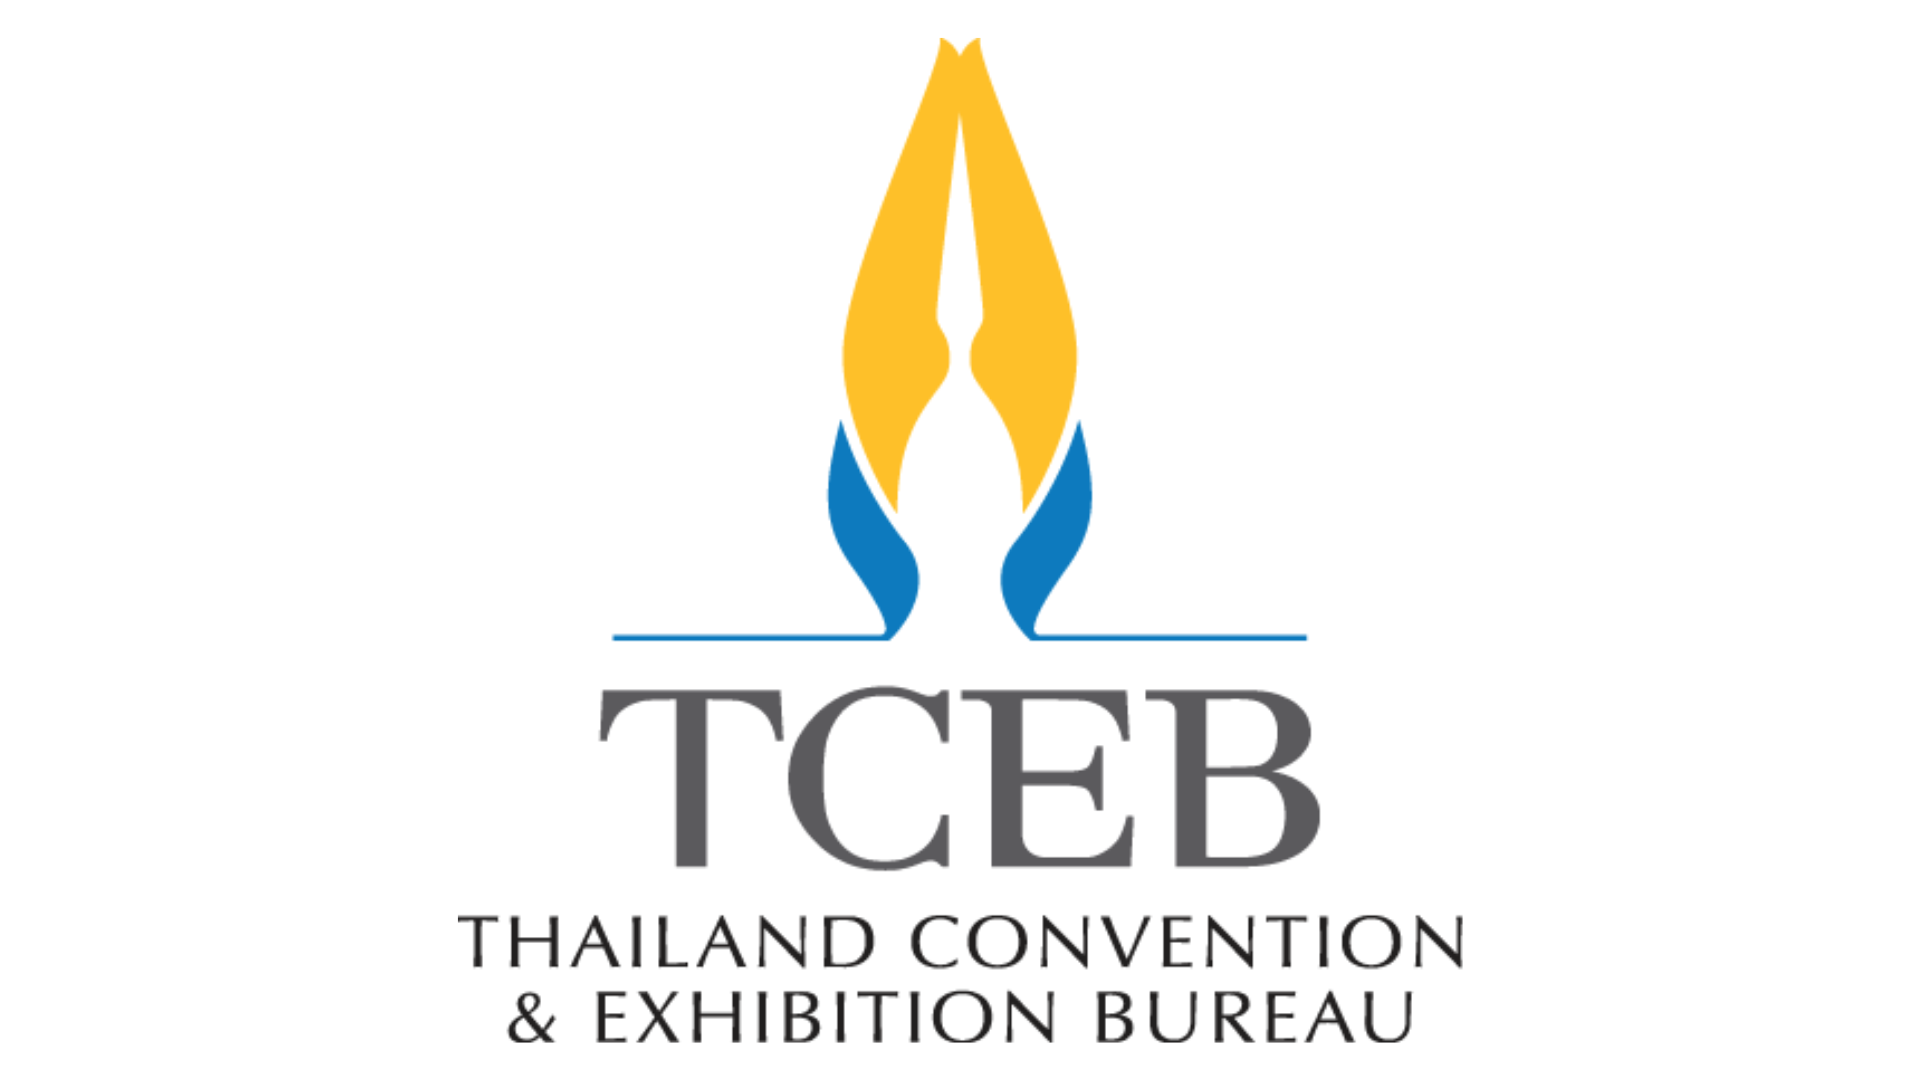 สำนักงานส่งเสริมการจัดประชุมและนิทรรศการ (TCEB)